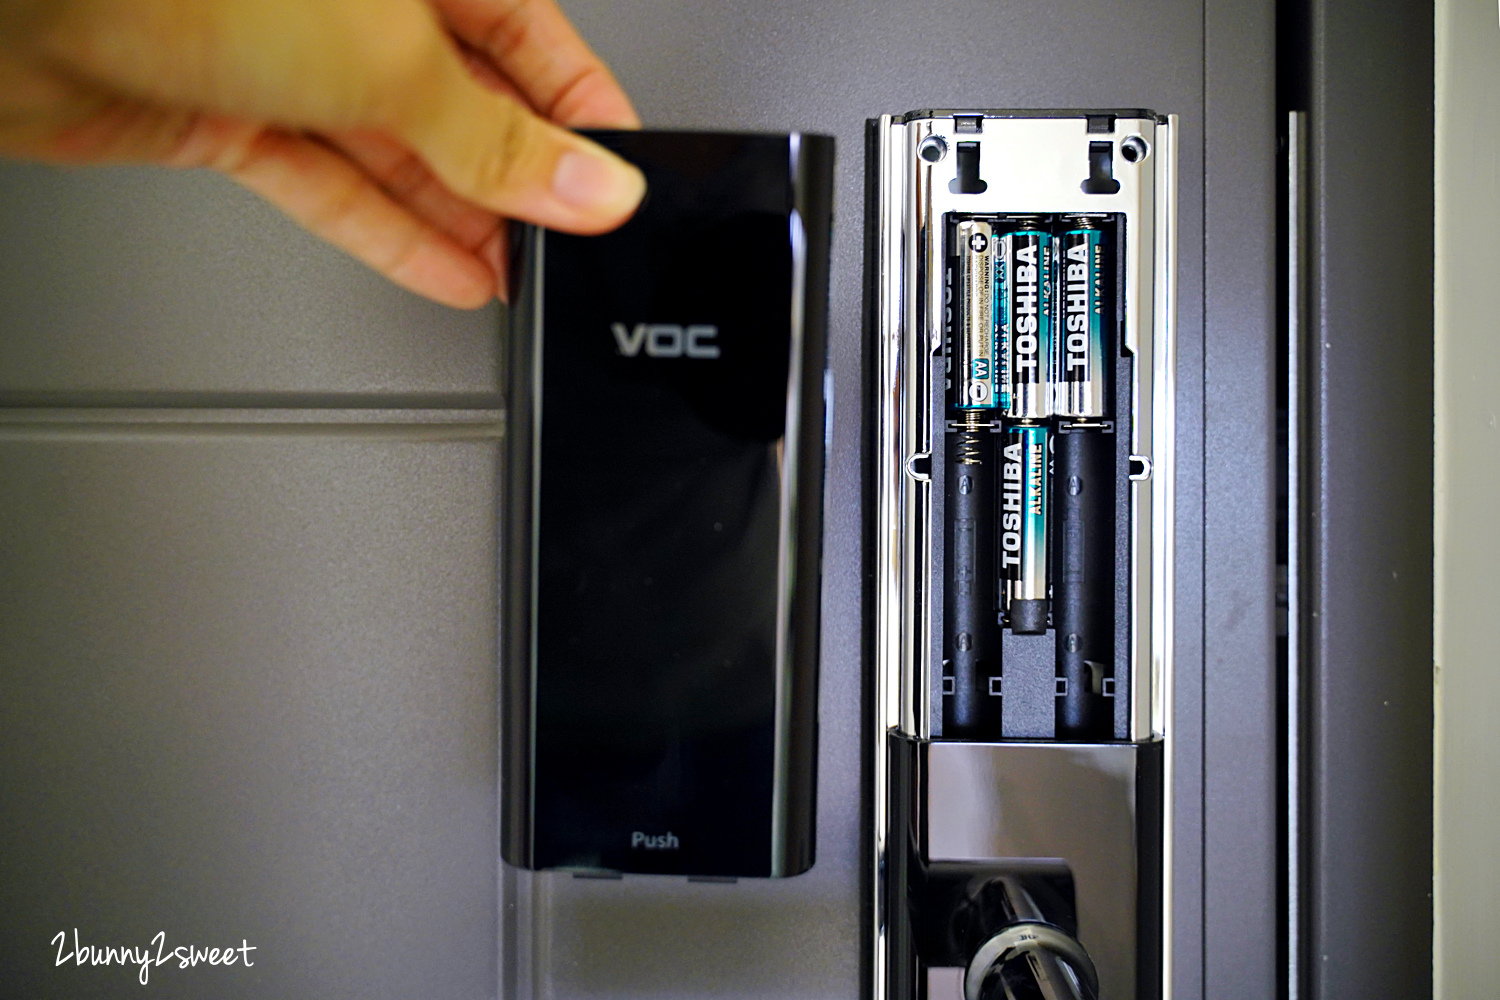 電子鎖推薦》VOC X9+plus 電子鎖～伸出手指就能開門就是這麼方便!! 0.3 秒疾速解鎖、指紋/密碼/卡片/鑰匙都能開，堅固耐用又安全機械鎖體 @兔兒毛毛姊妹花